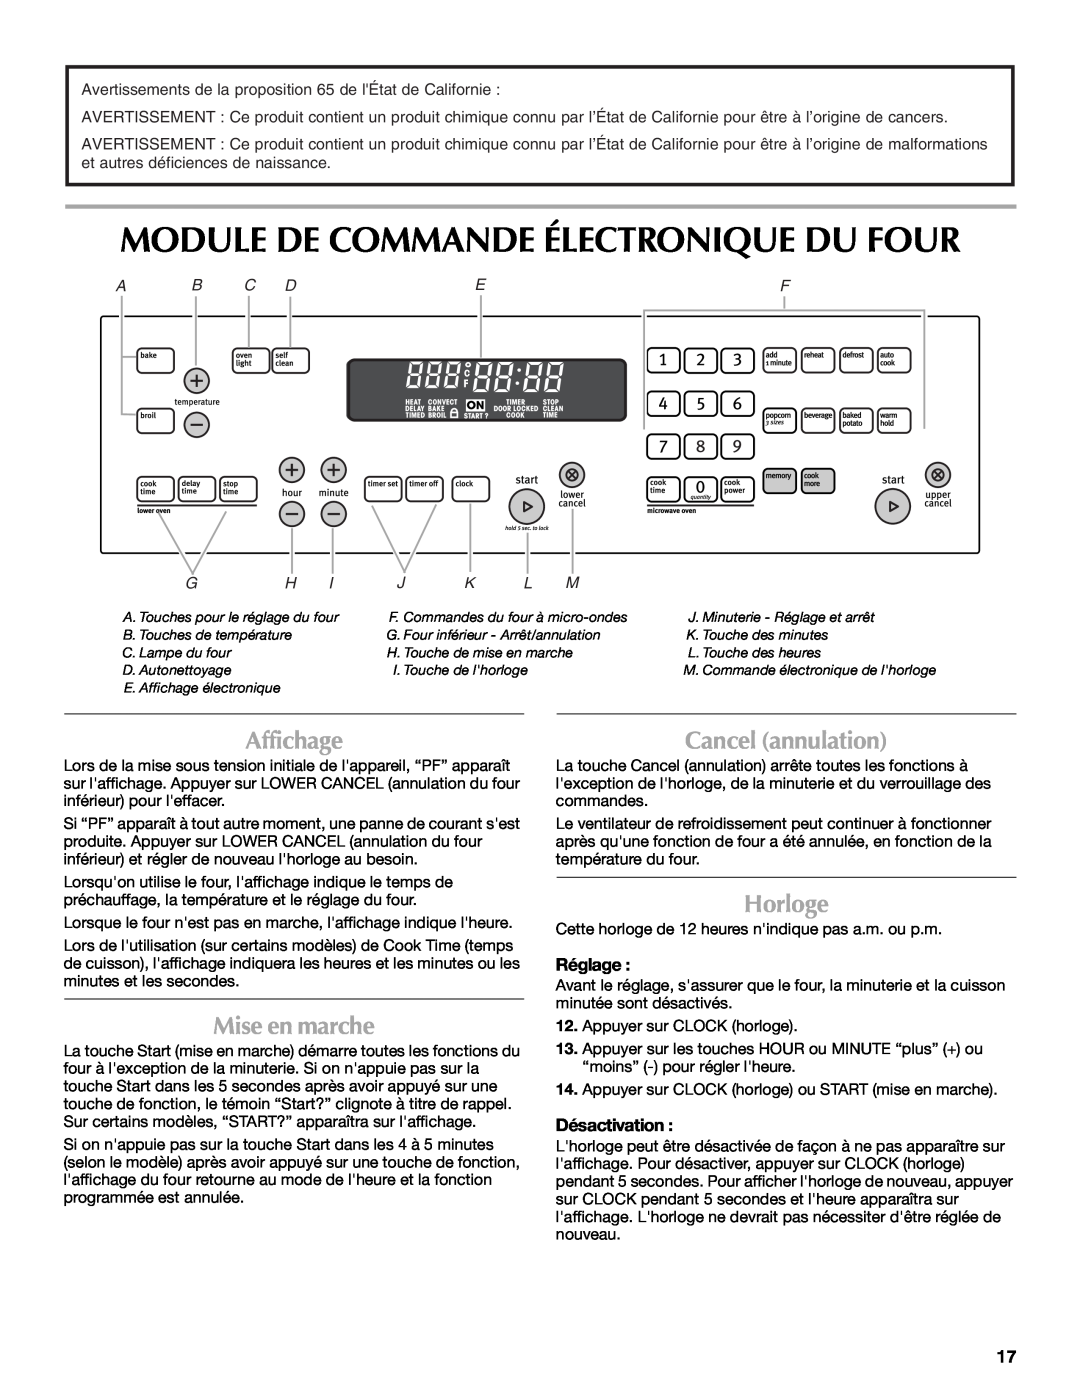 Maytag MMW7530WDS Module De Commande Électronique Du Four, Affichage, Mise en marche, Cancel annulation, Horloge, Réglage 